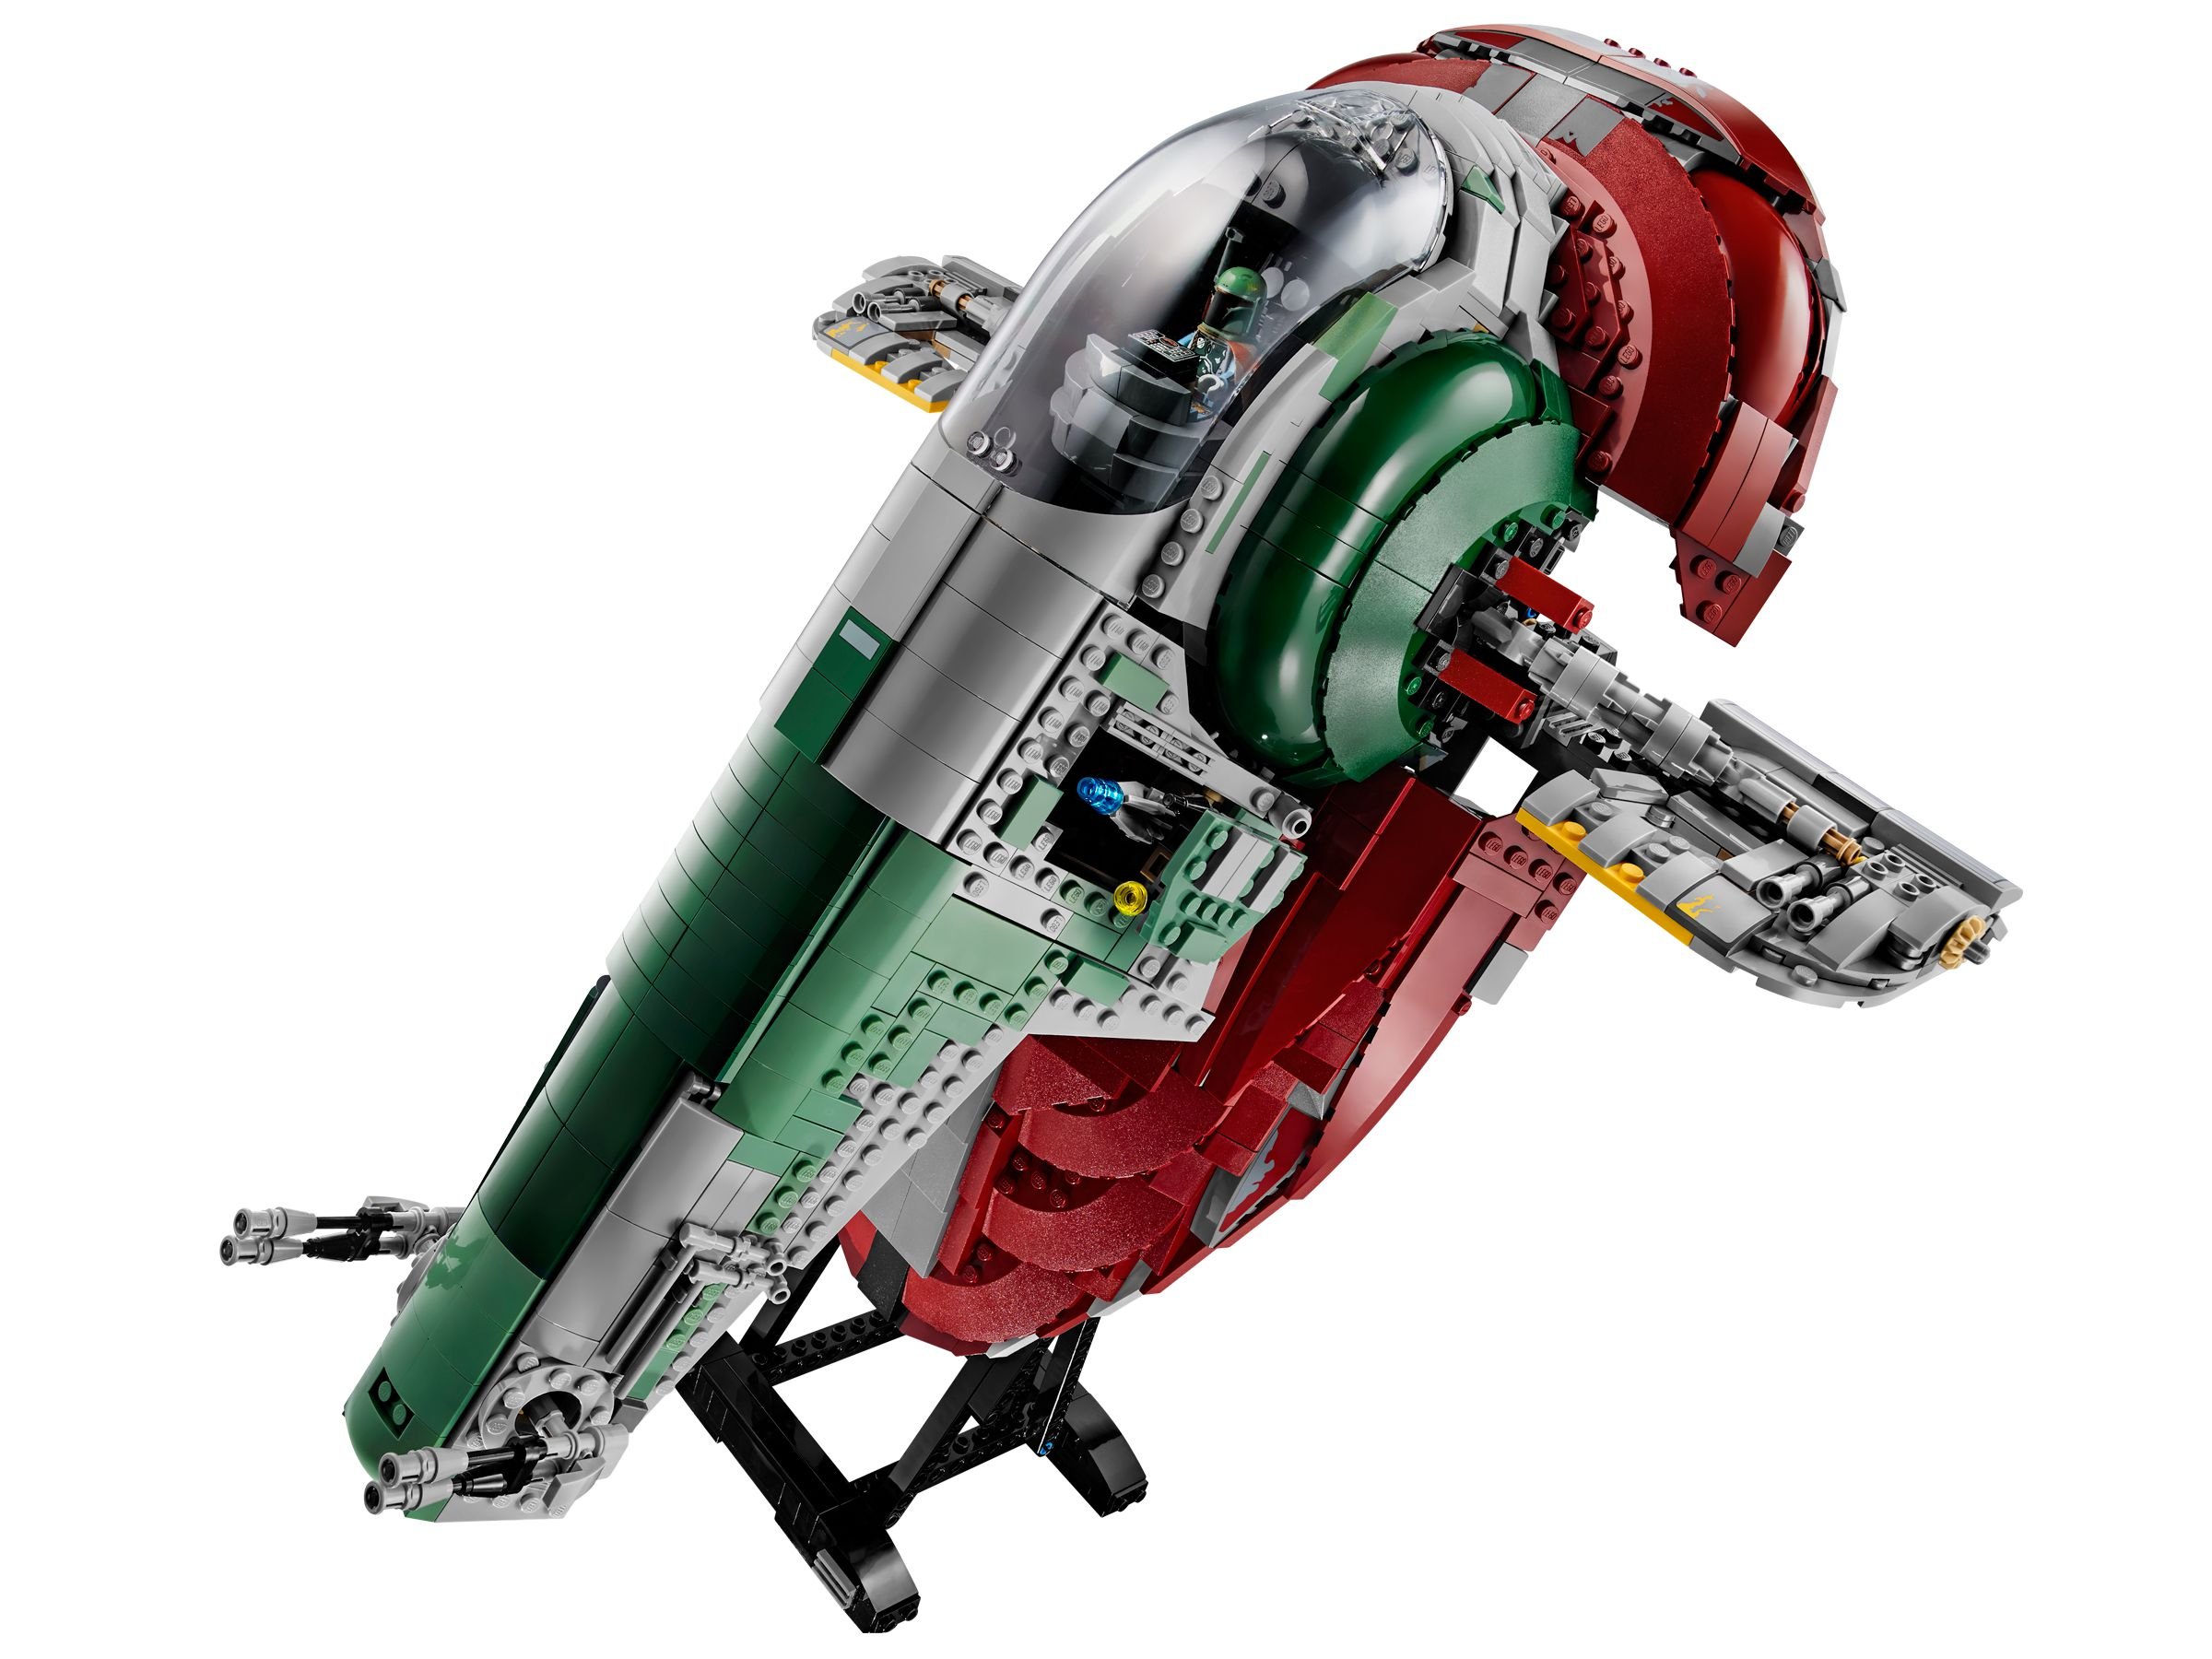 LEGO Star Wars 75060 UCS Slave I LEGO_75060_alt2.jpg